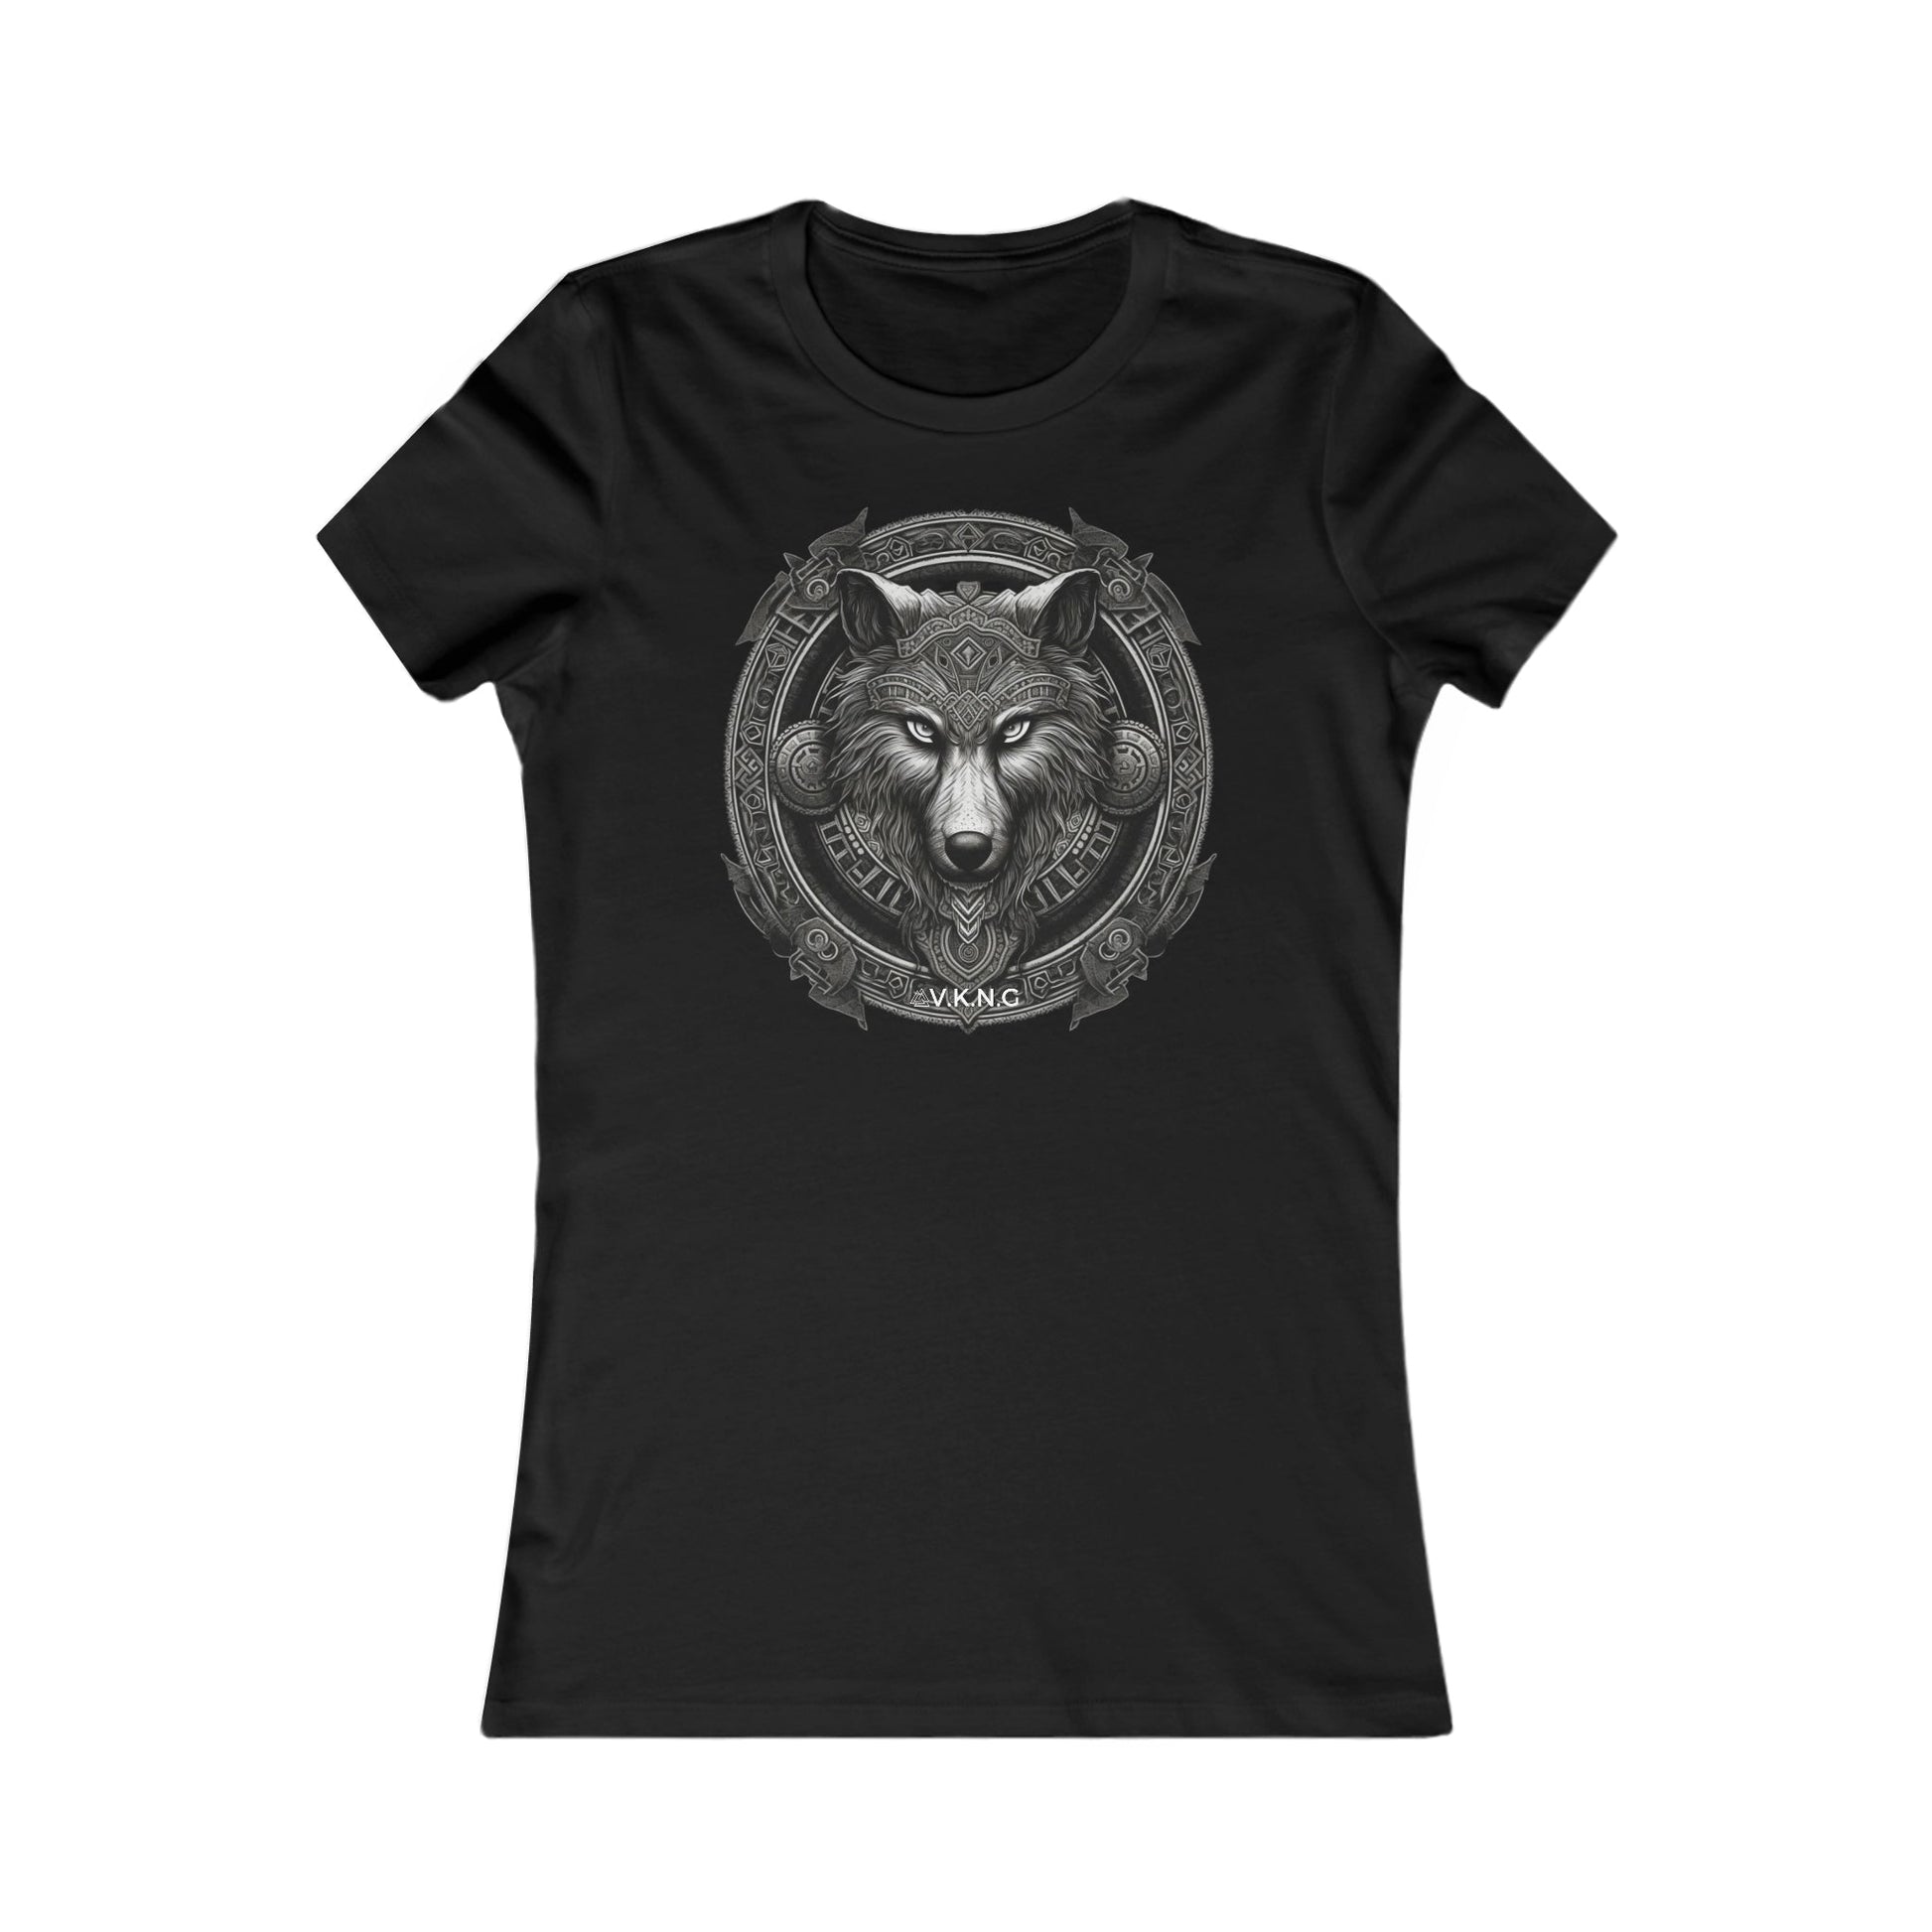 Printify T-Shirt Wolf V2  V.K.N.G™  Girly Cut